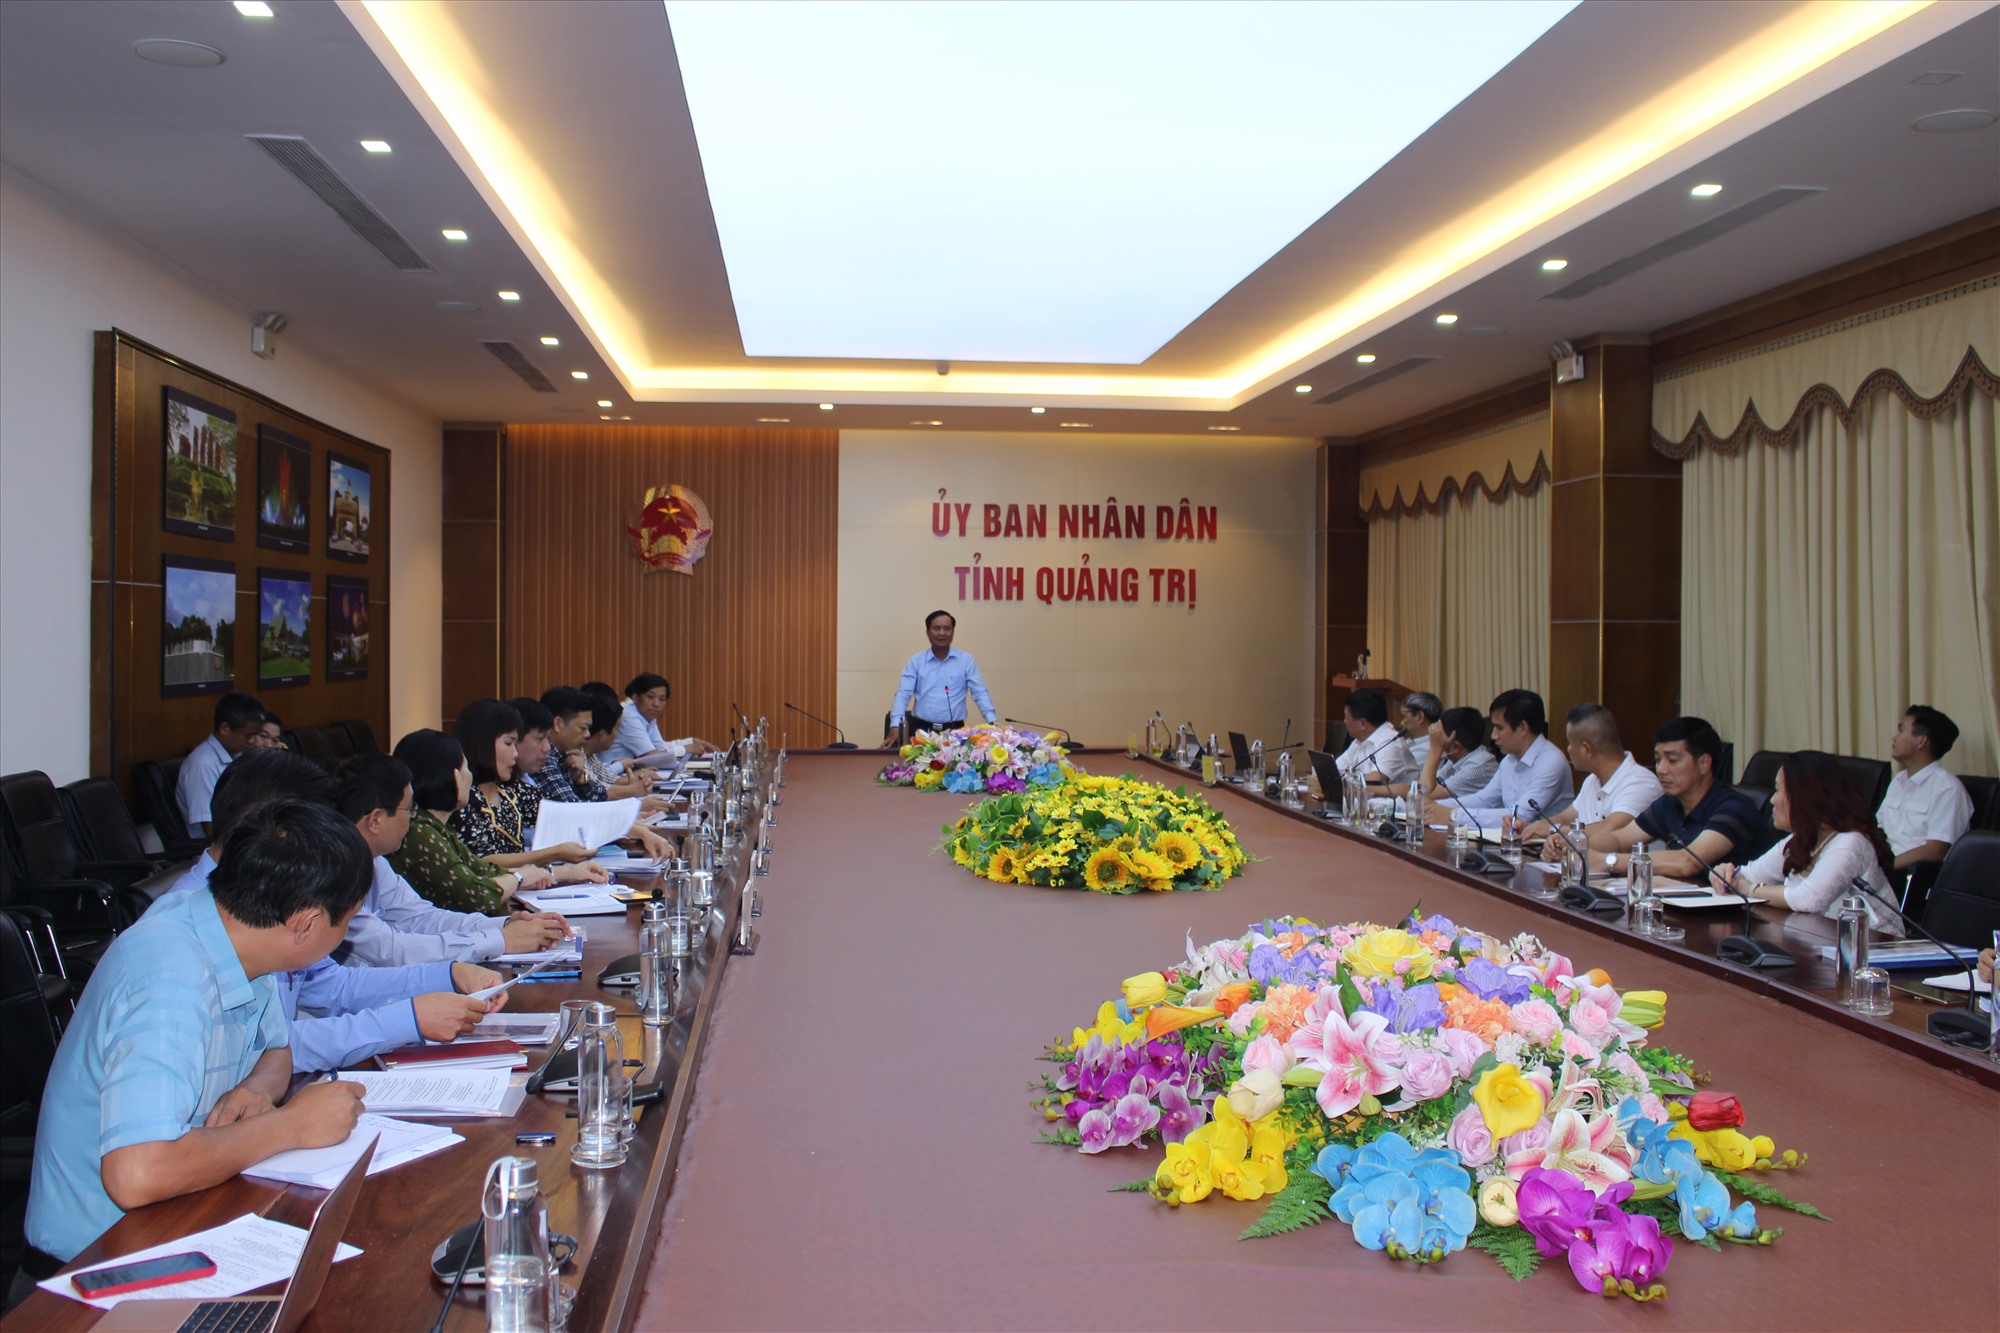 Chủ tịch UBND tỉnh Võ Văn Hưng nhấn mạnh, dự án mà nhà đầu tư đề xuất rất có tiềm năng, phù hợp chủ trương thu hút đầu tư và quy hoạch phát triển kinh tế của tỉnh - Ảnh: H.T